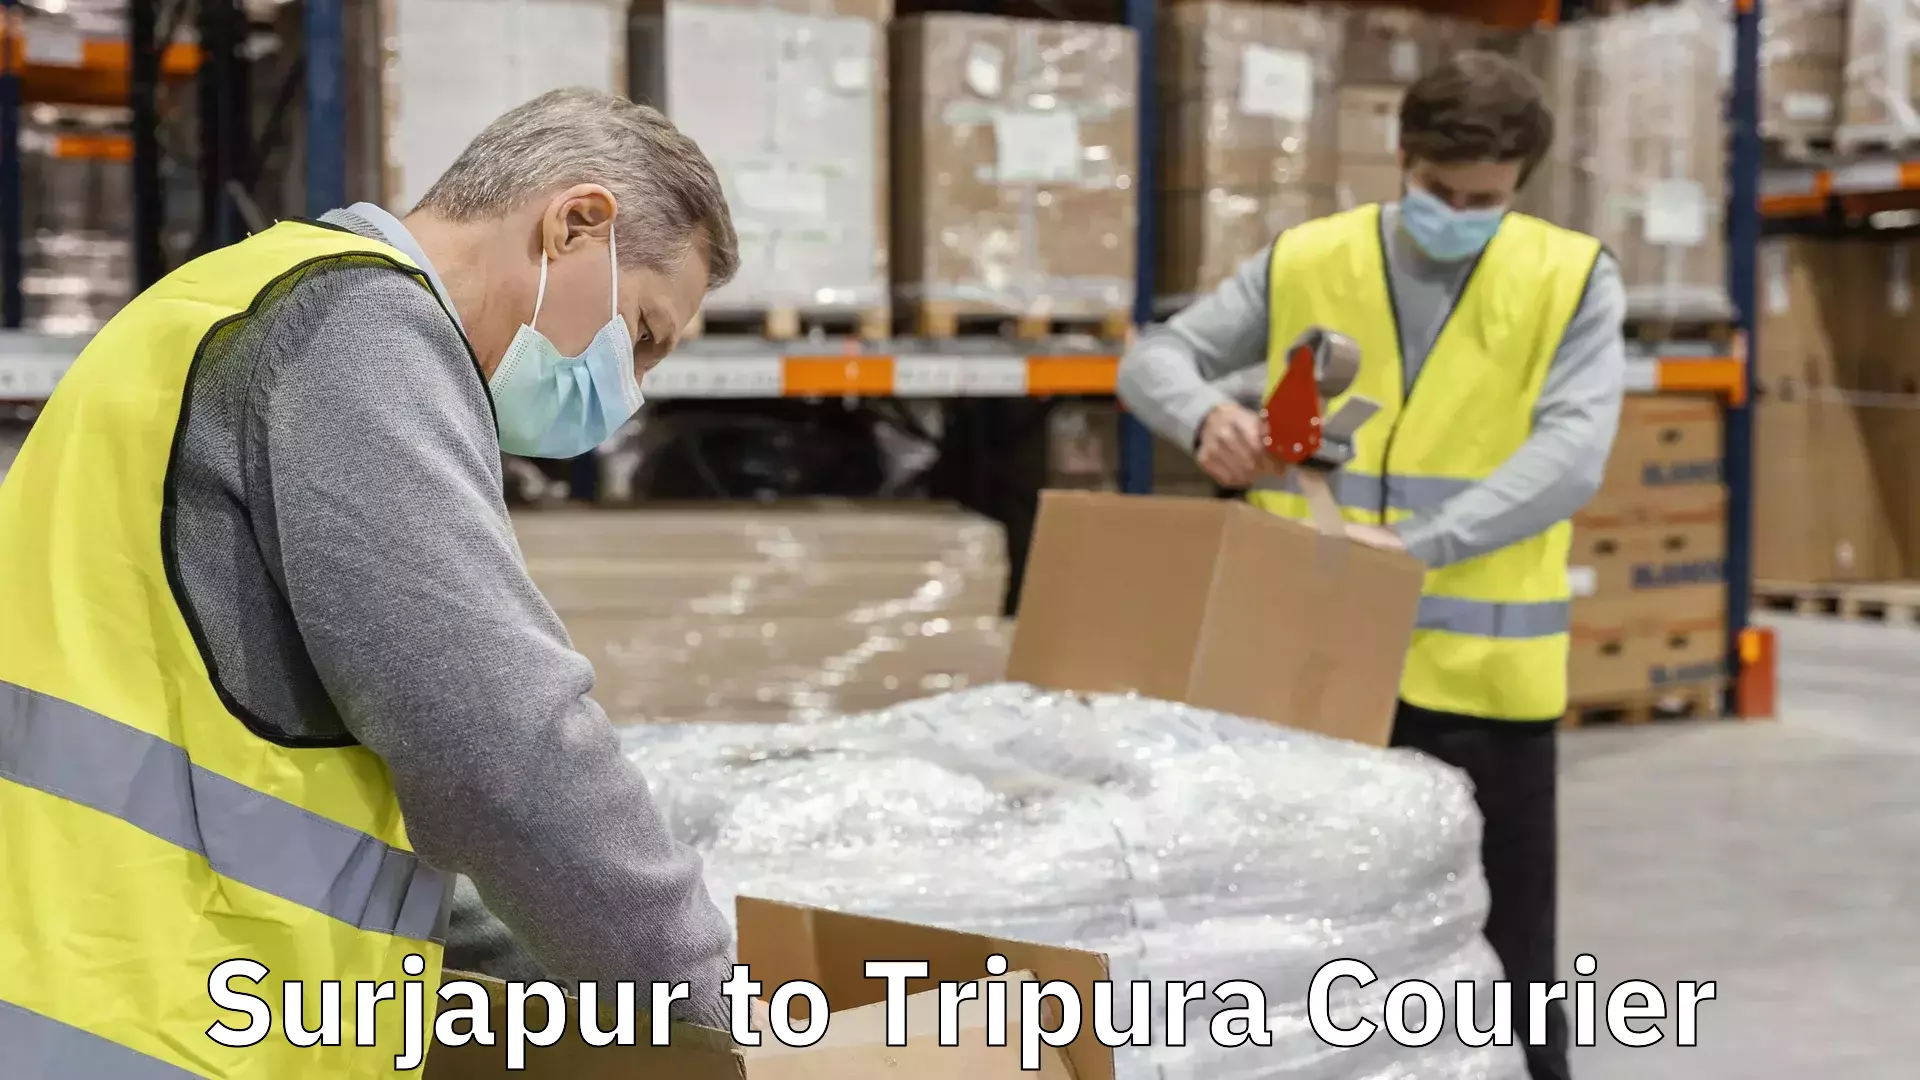 Next-generation courier services Surjapur to Tripura